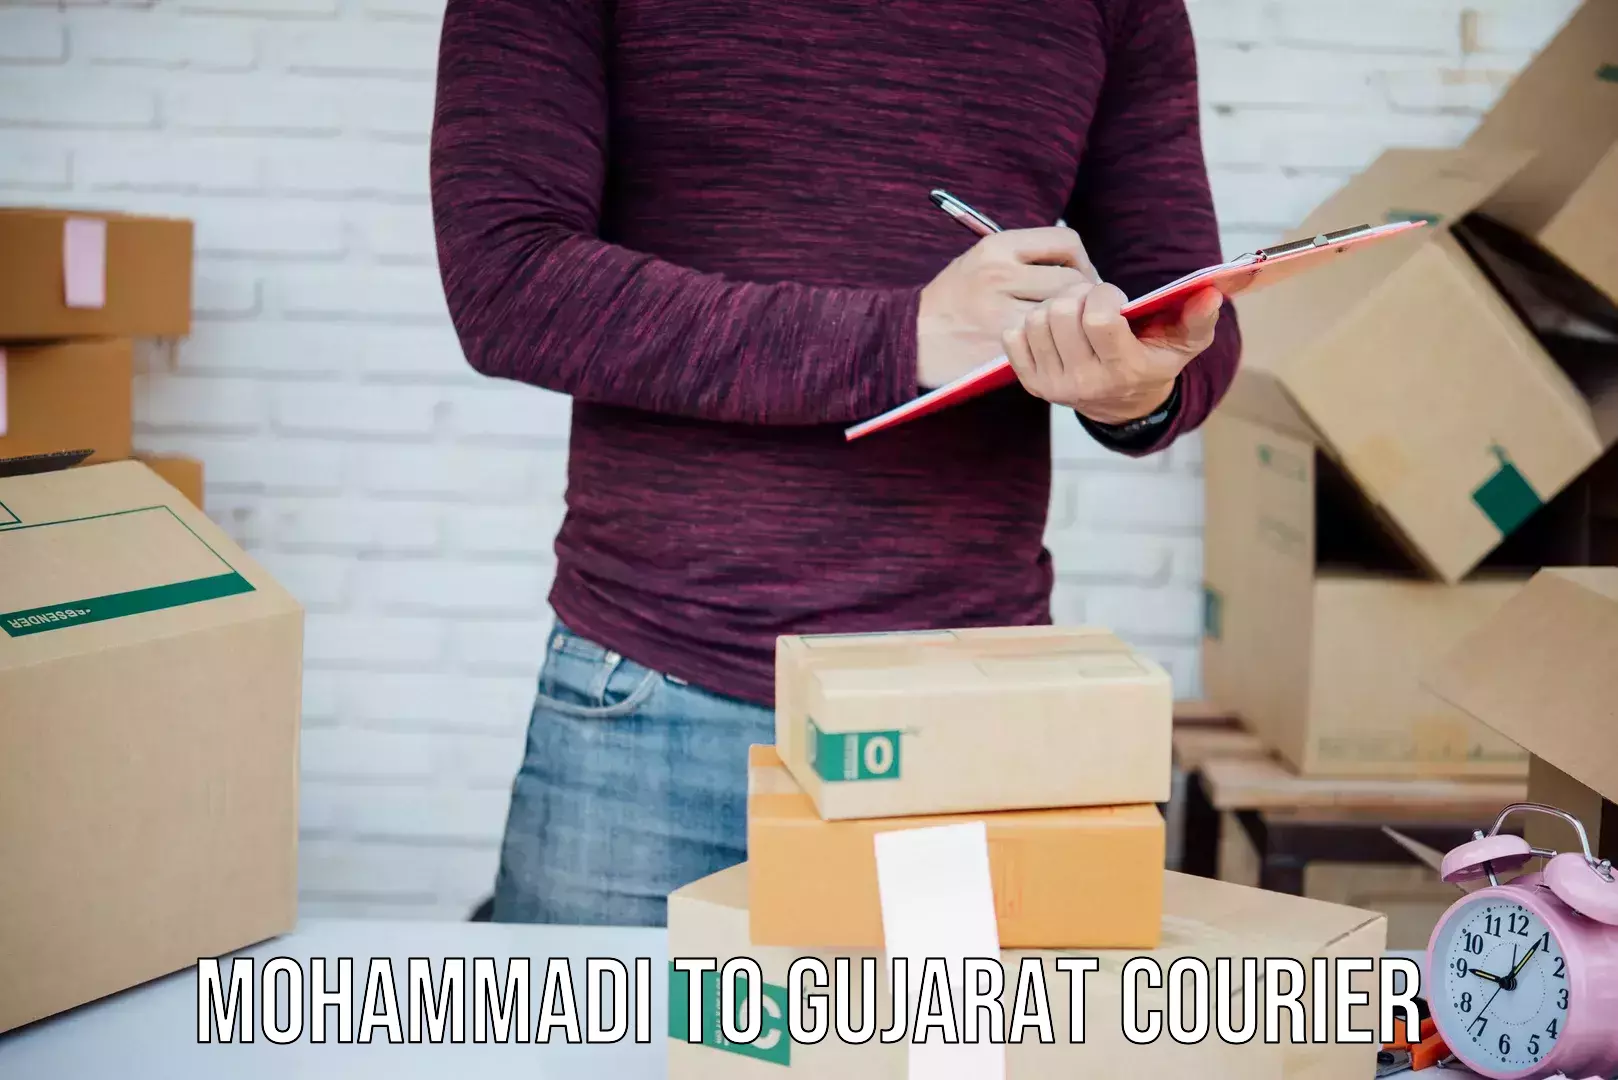 Customer-centric shipping Mohammadi to Gujarat